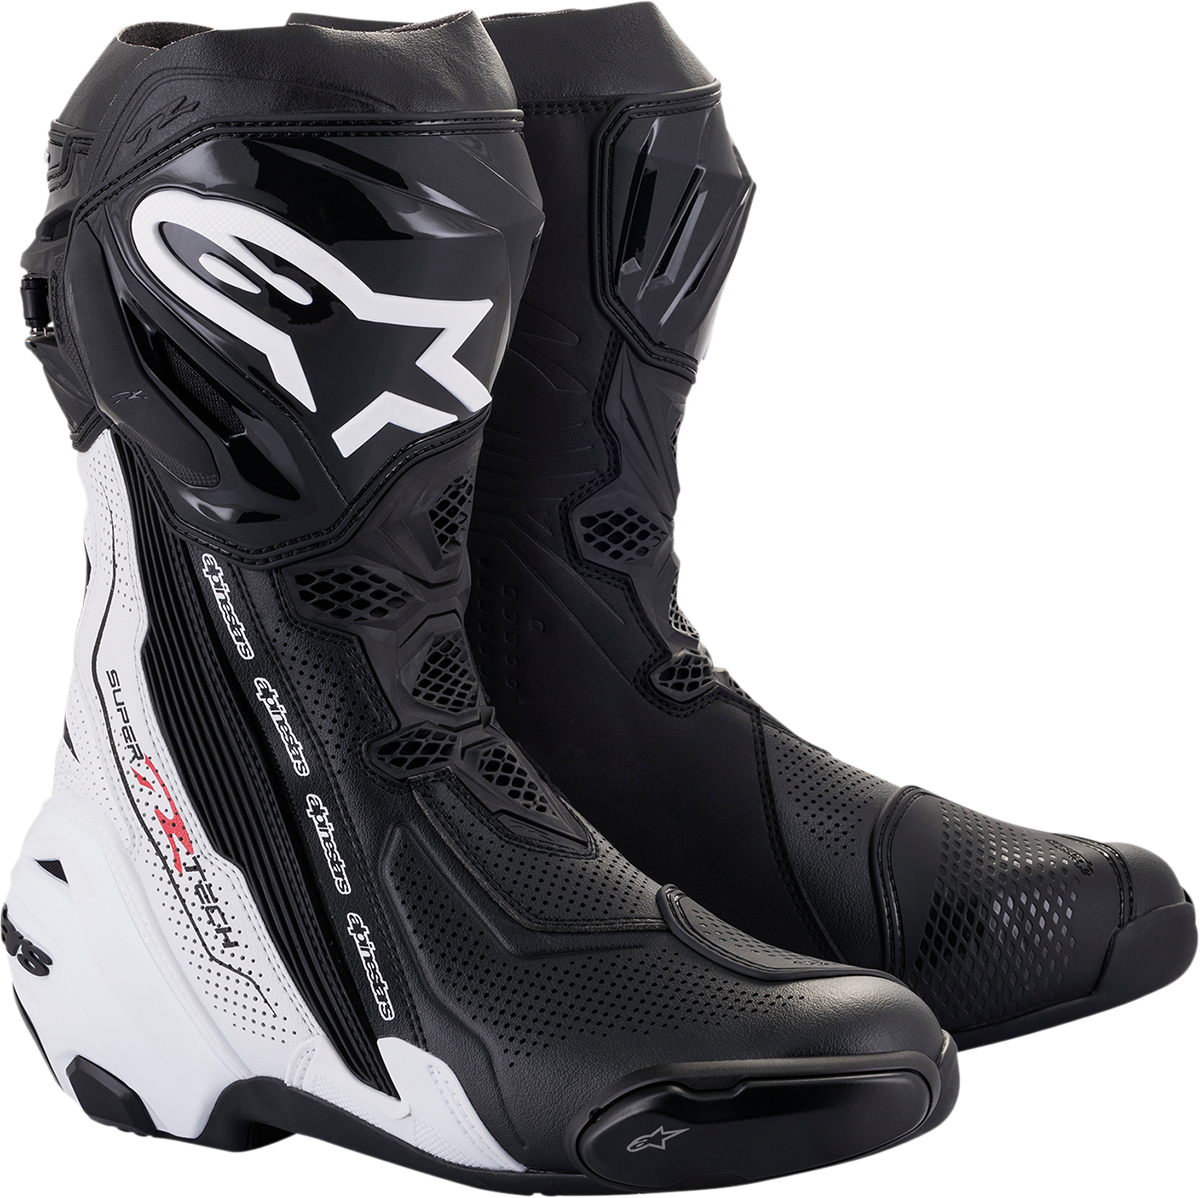 ALPINESTARS Supertech V Boots - Black/White - US 9 / EU 43 2220121-12-43